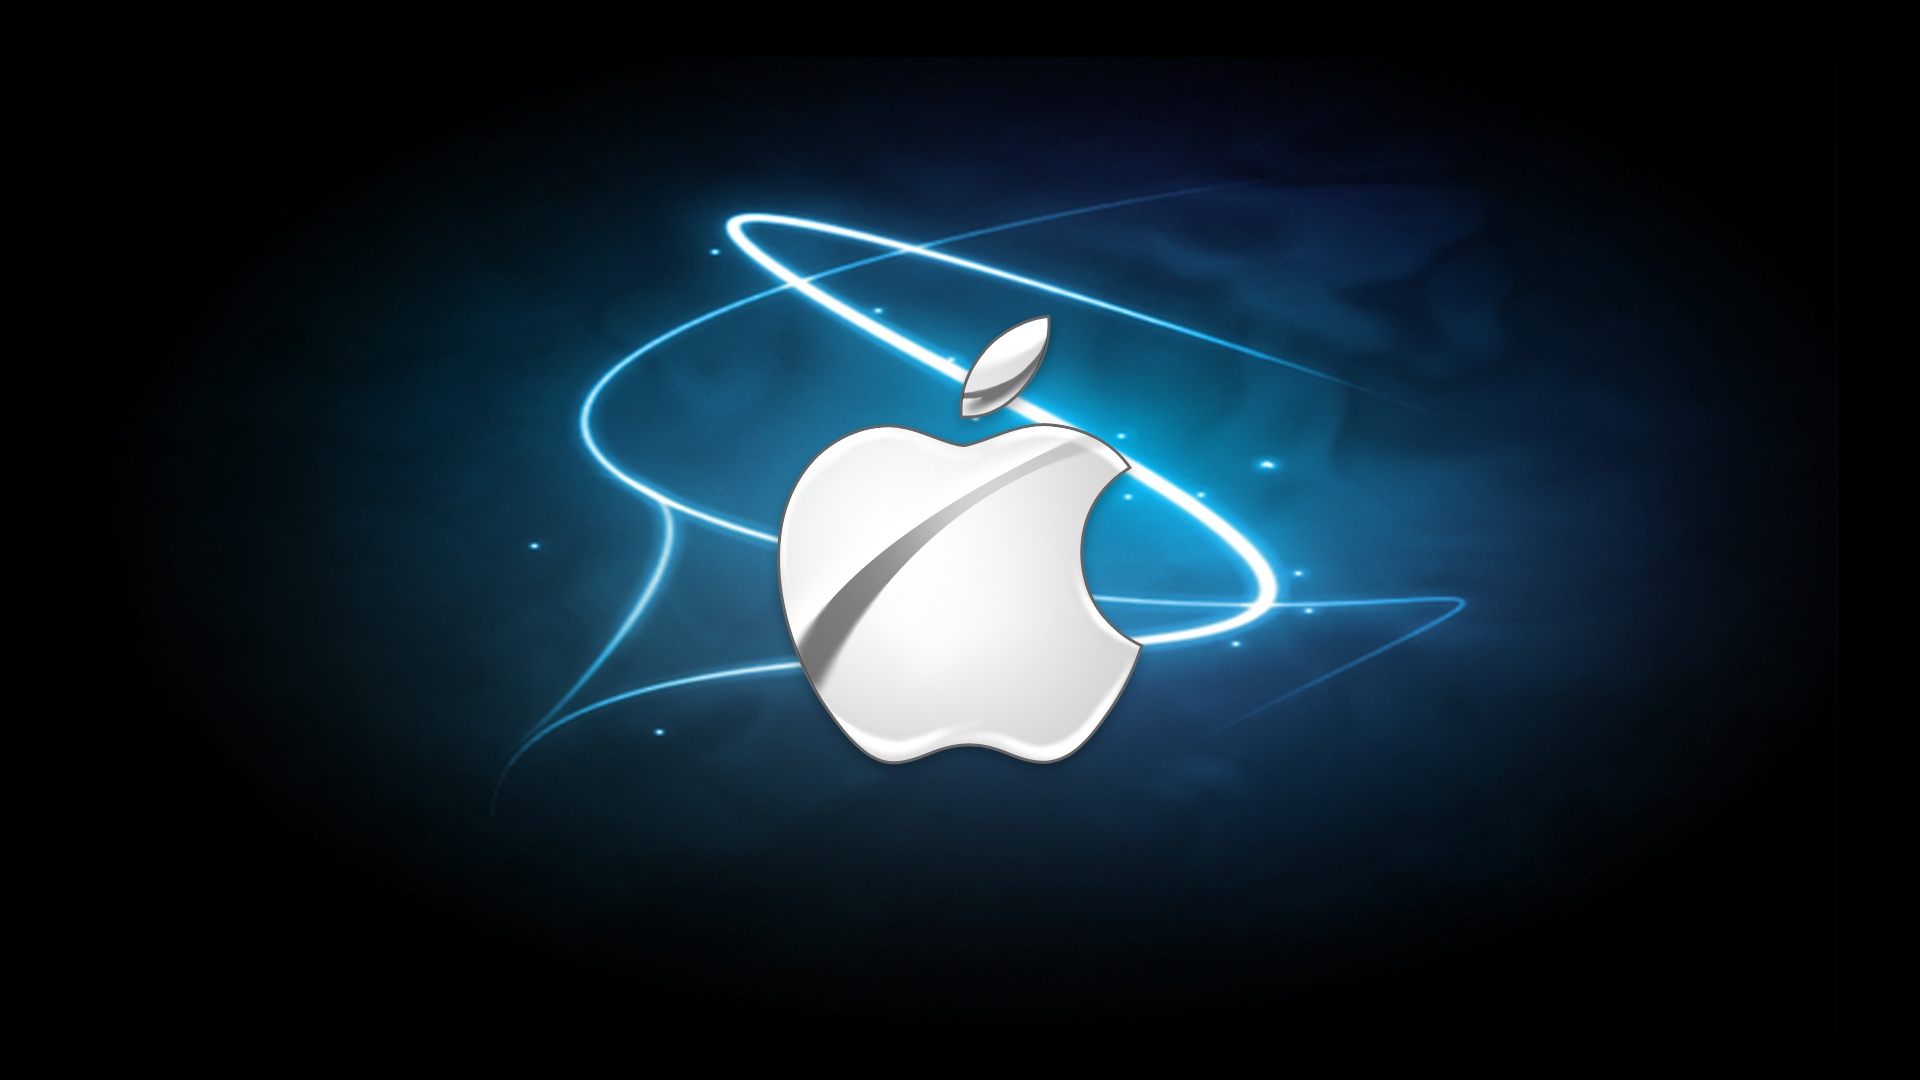 50 fondos de pantalla inspiradores de Apple Mac y iPad para descargar